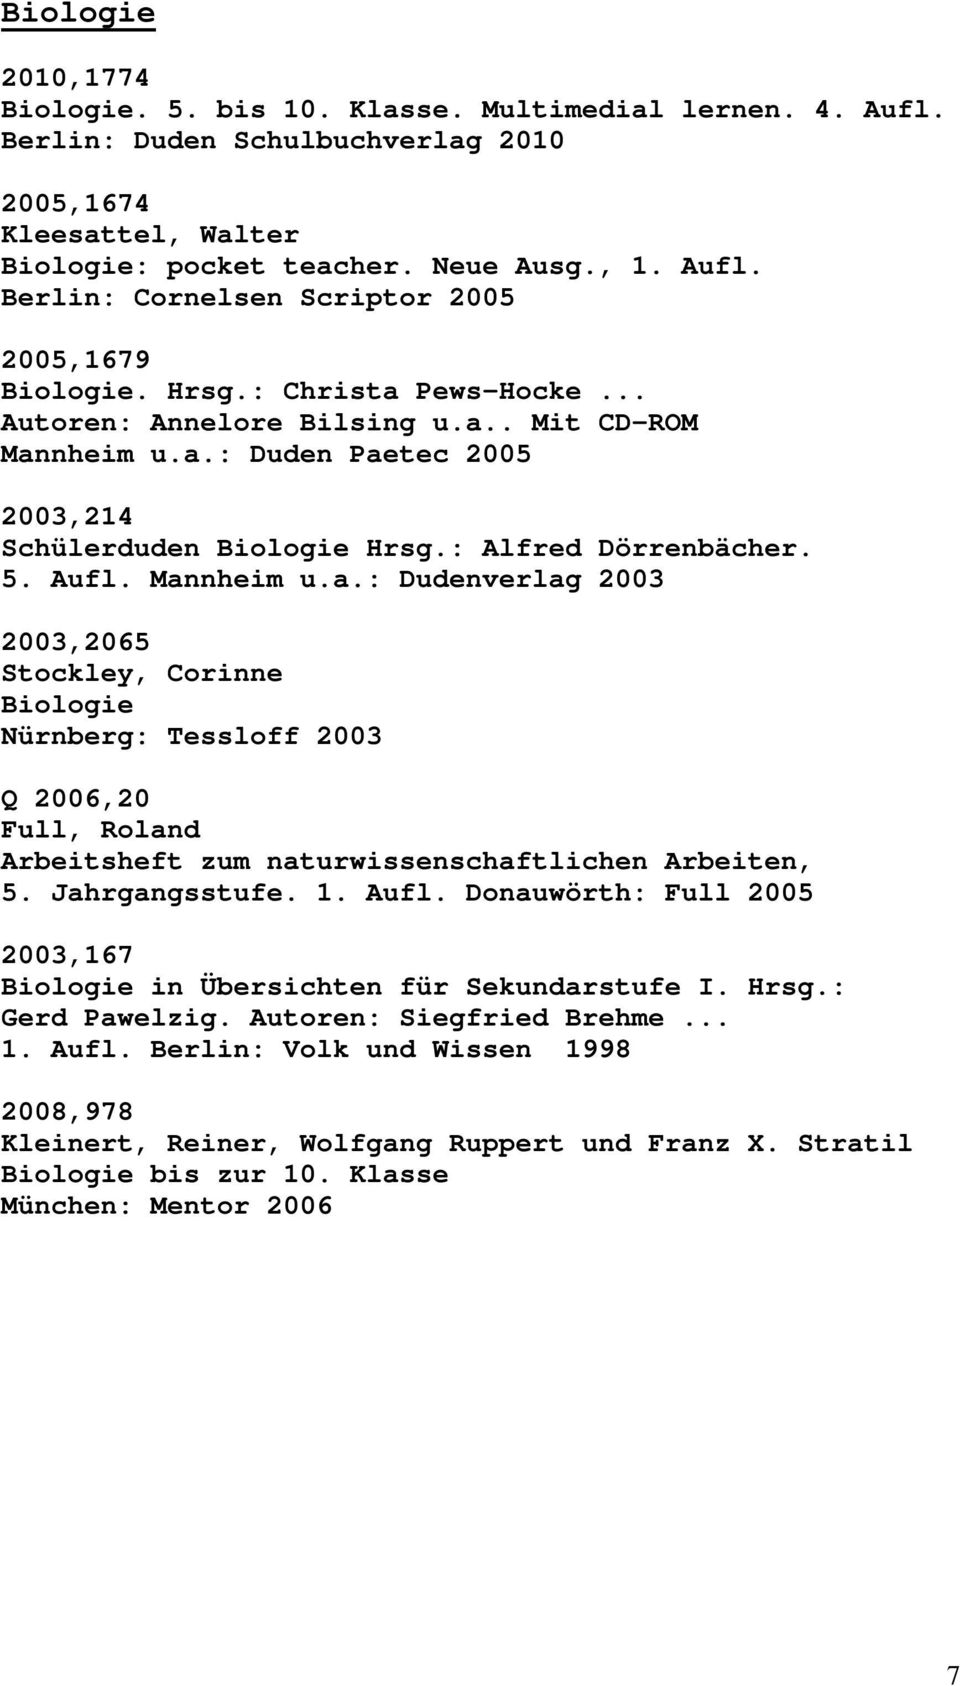 Jahrgangsstufe. 1. Aufl. Donauwörth: Full 2005 2003,167 Biologie in Übersichten für Sekundarstufe I. Hrsg.: Gerd Pawelzig. Autoren: Siegfried Brehme... 1. Aufl. Berlin: Volk und Wissen 1998 2008,978 Kleinert, Reiner, Wolfgang Ruppert und Franz X.